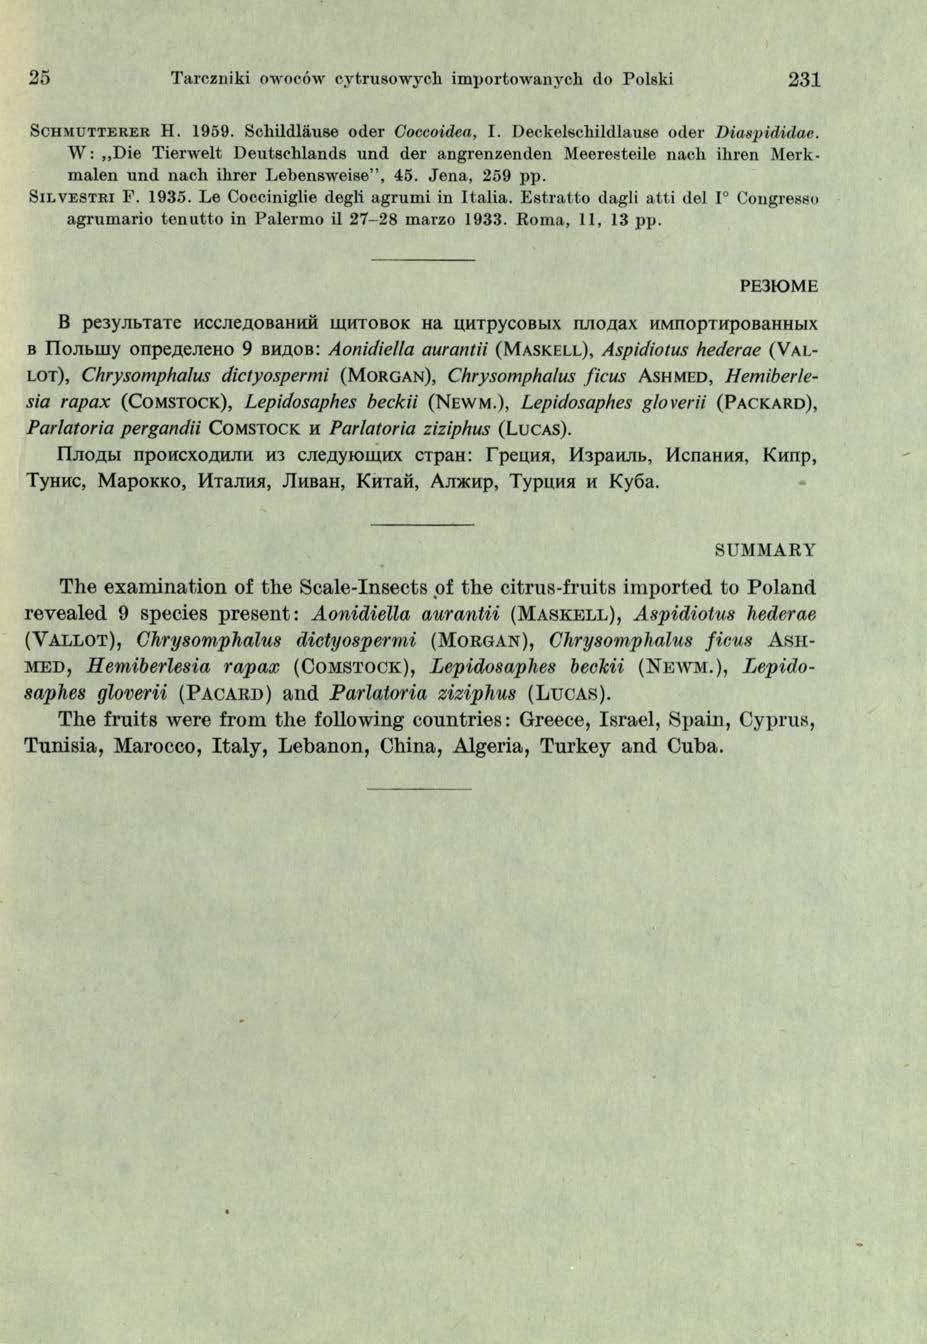 25 Tarczniki owoców cytrusowych importowanych do Polski 231 S c h m u t t e r e r H. 1959. Schildlause oder Goccoidea, I. Deckelschildlause oder Diaspididae.